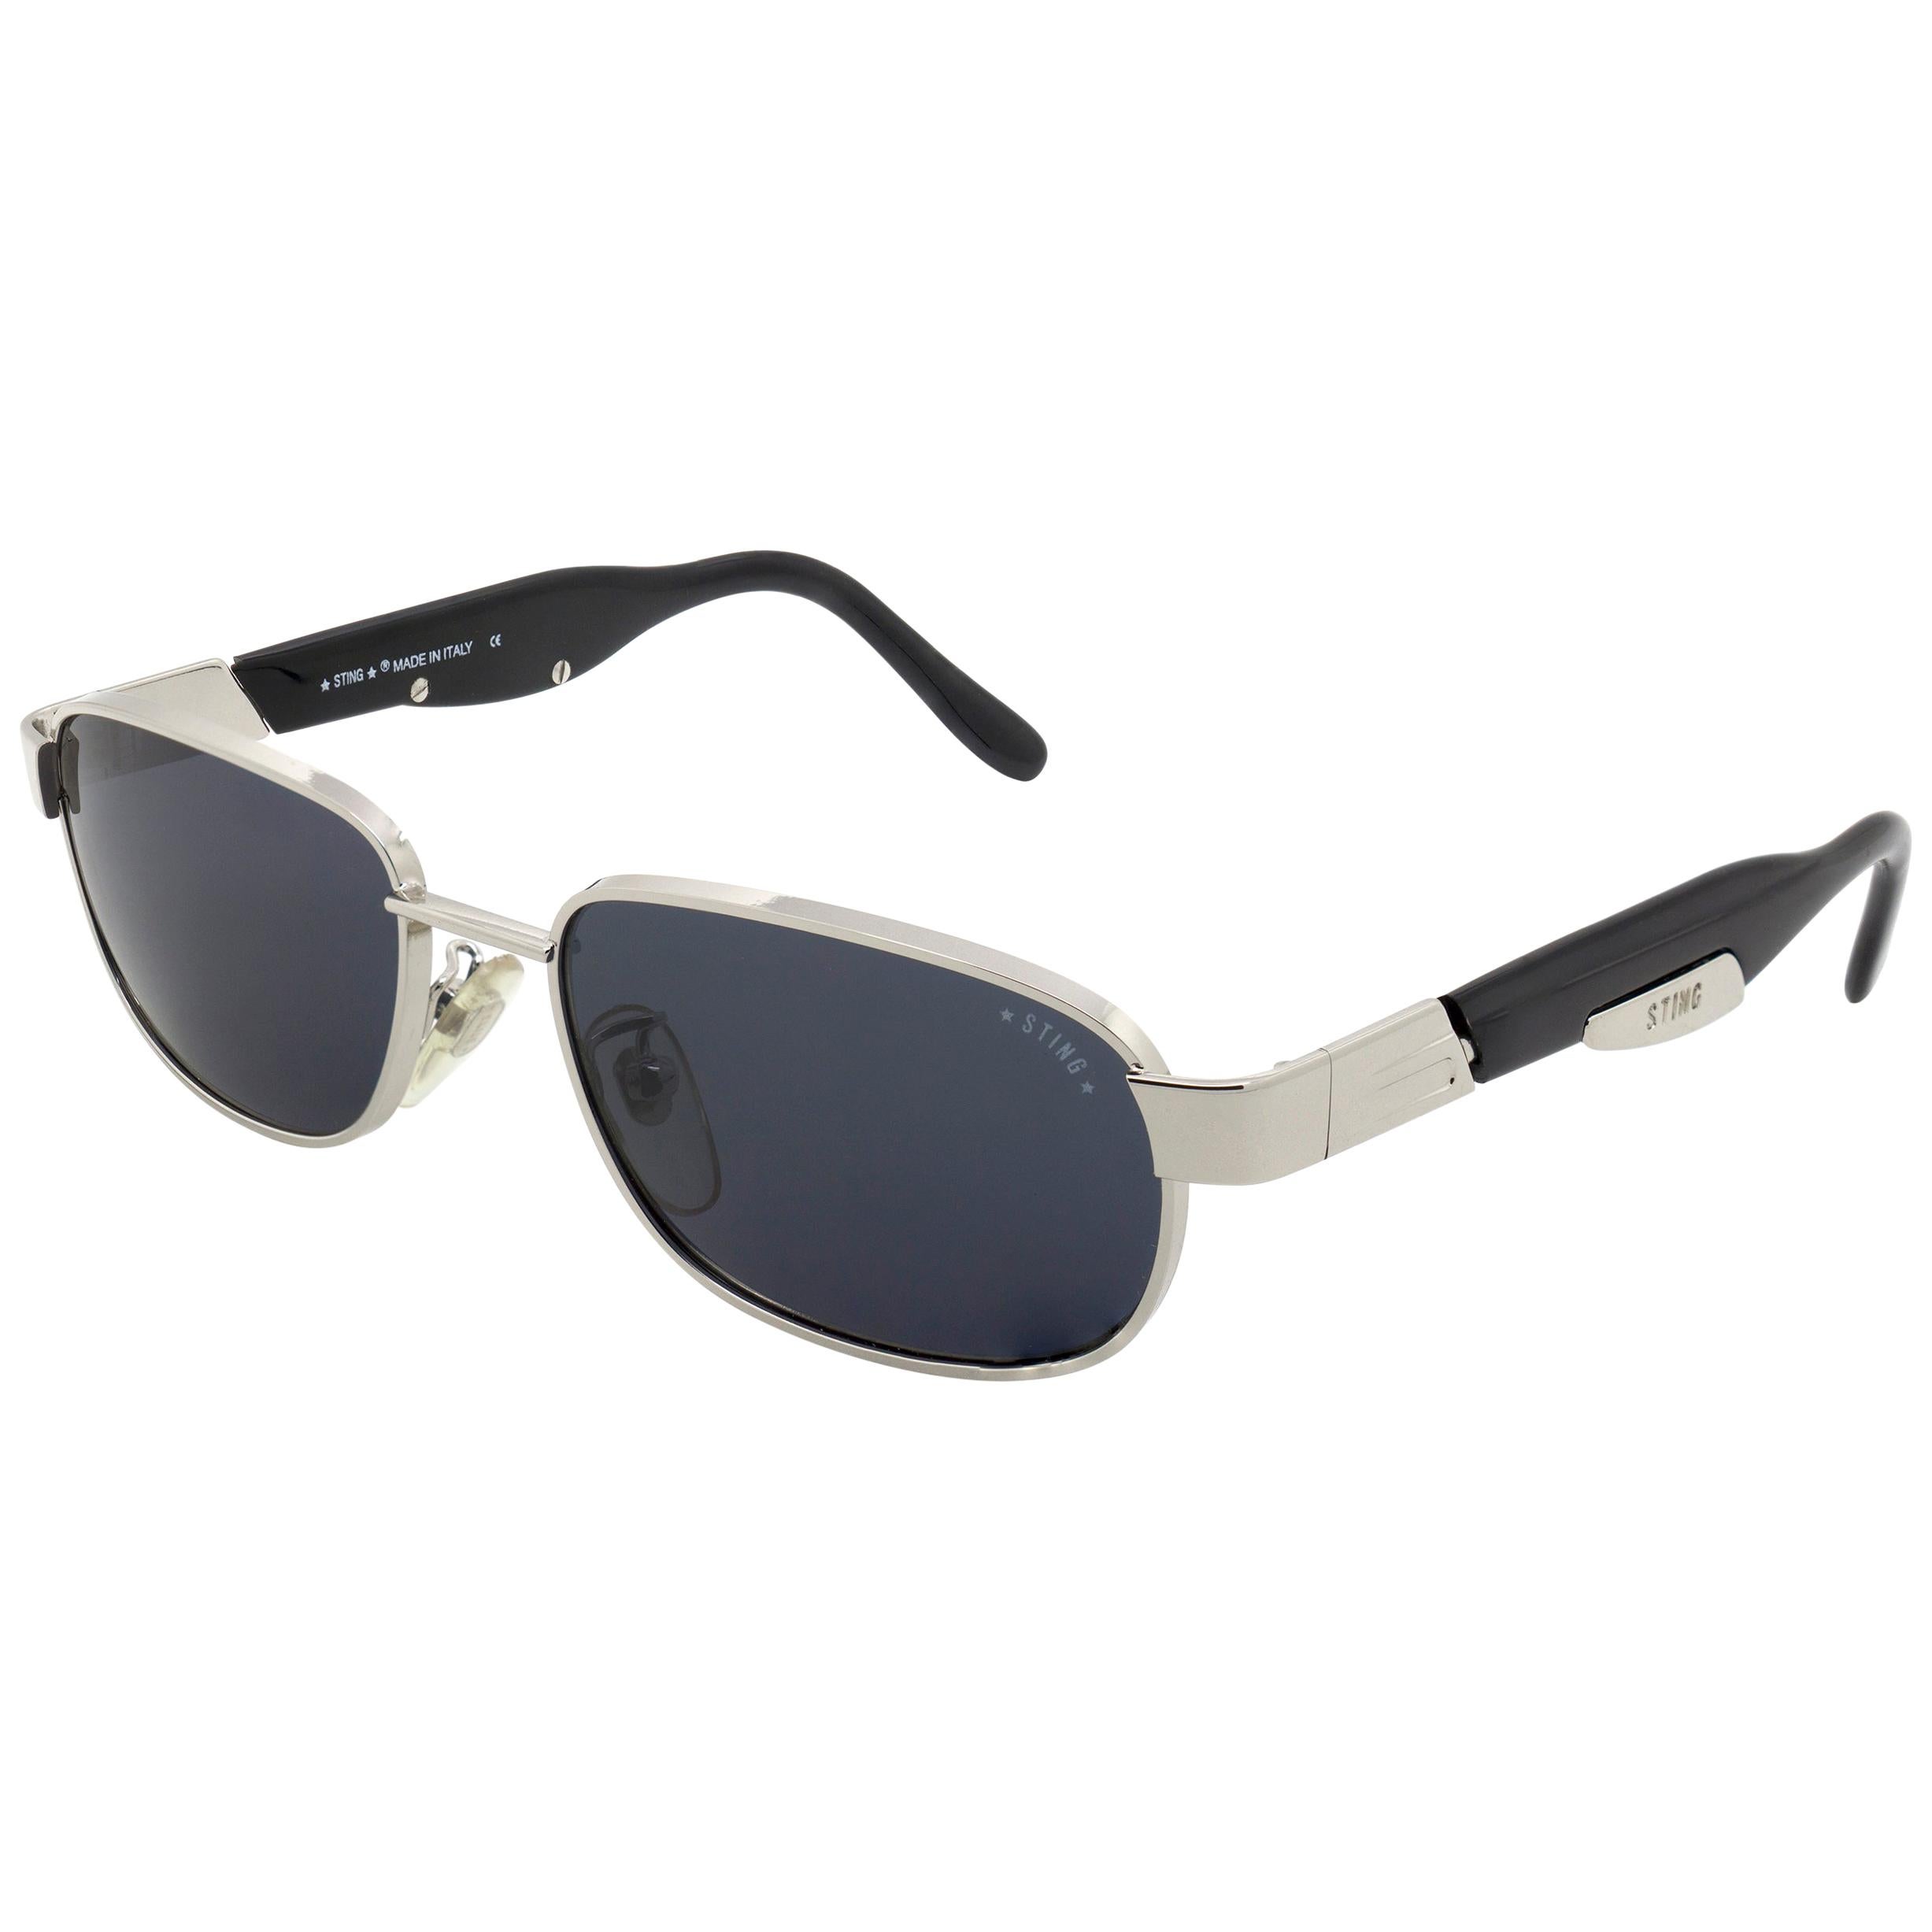 Vintage-Sonnenbrille mit Sting-Muster, hergestellt in Italien. Rechteckige Silber-Sonnenbrille für Männer